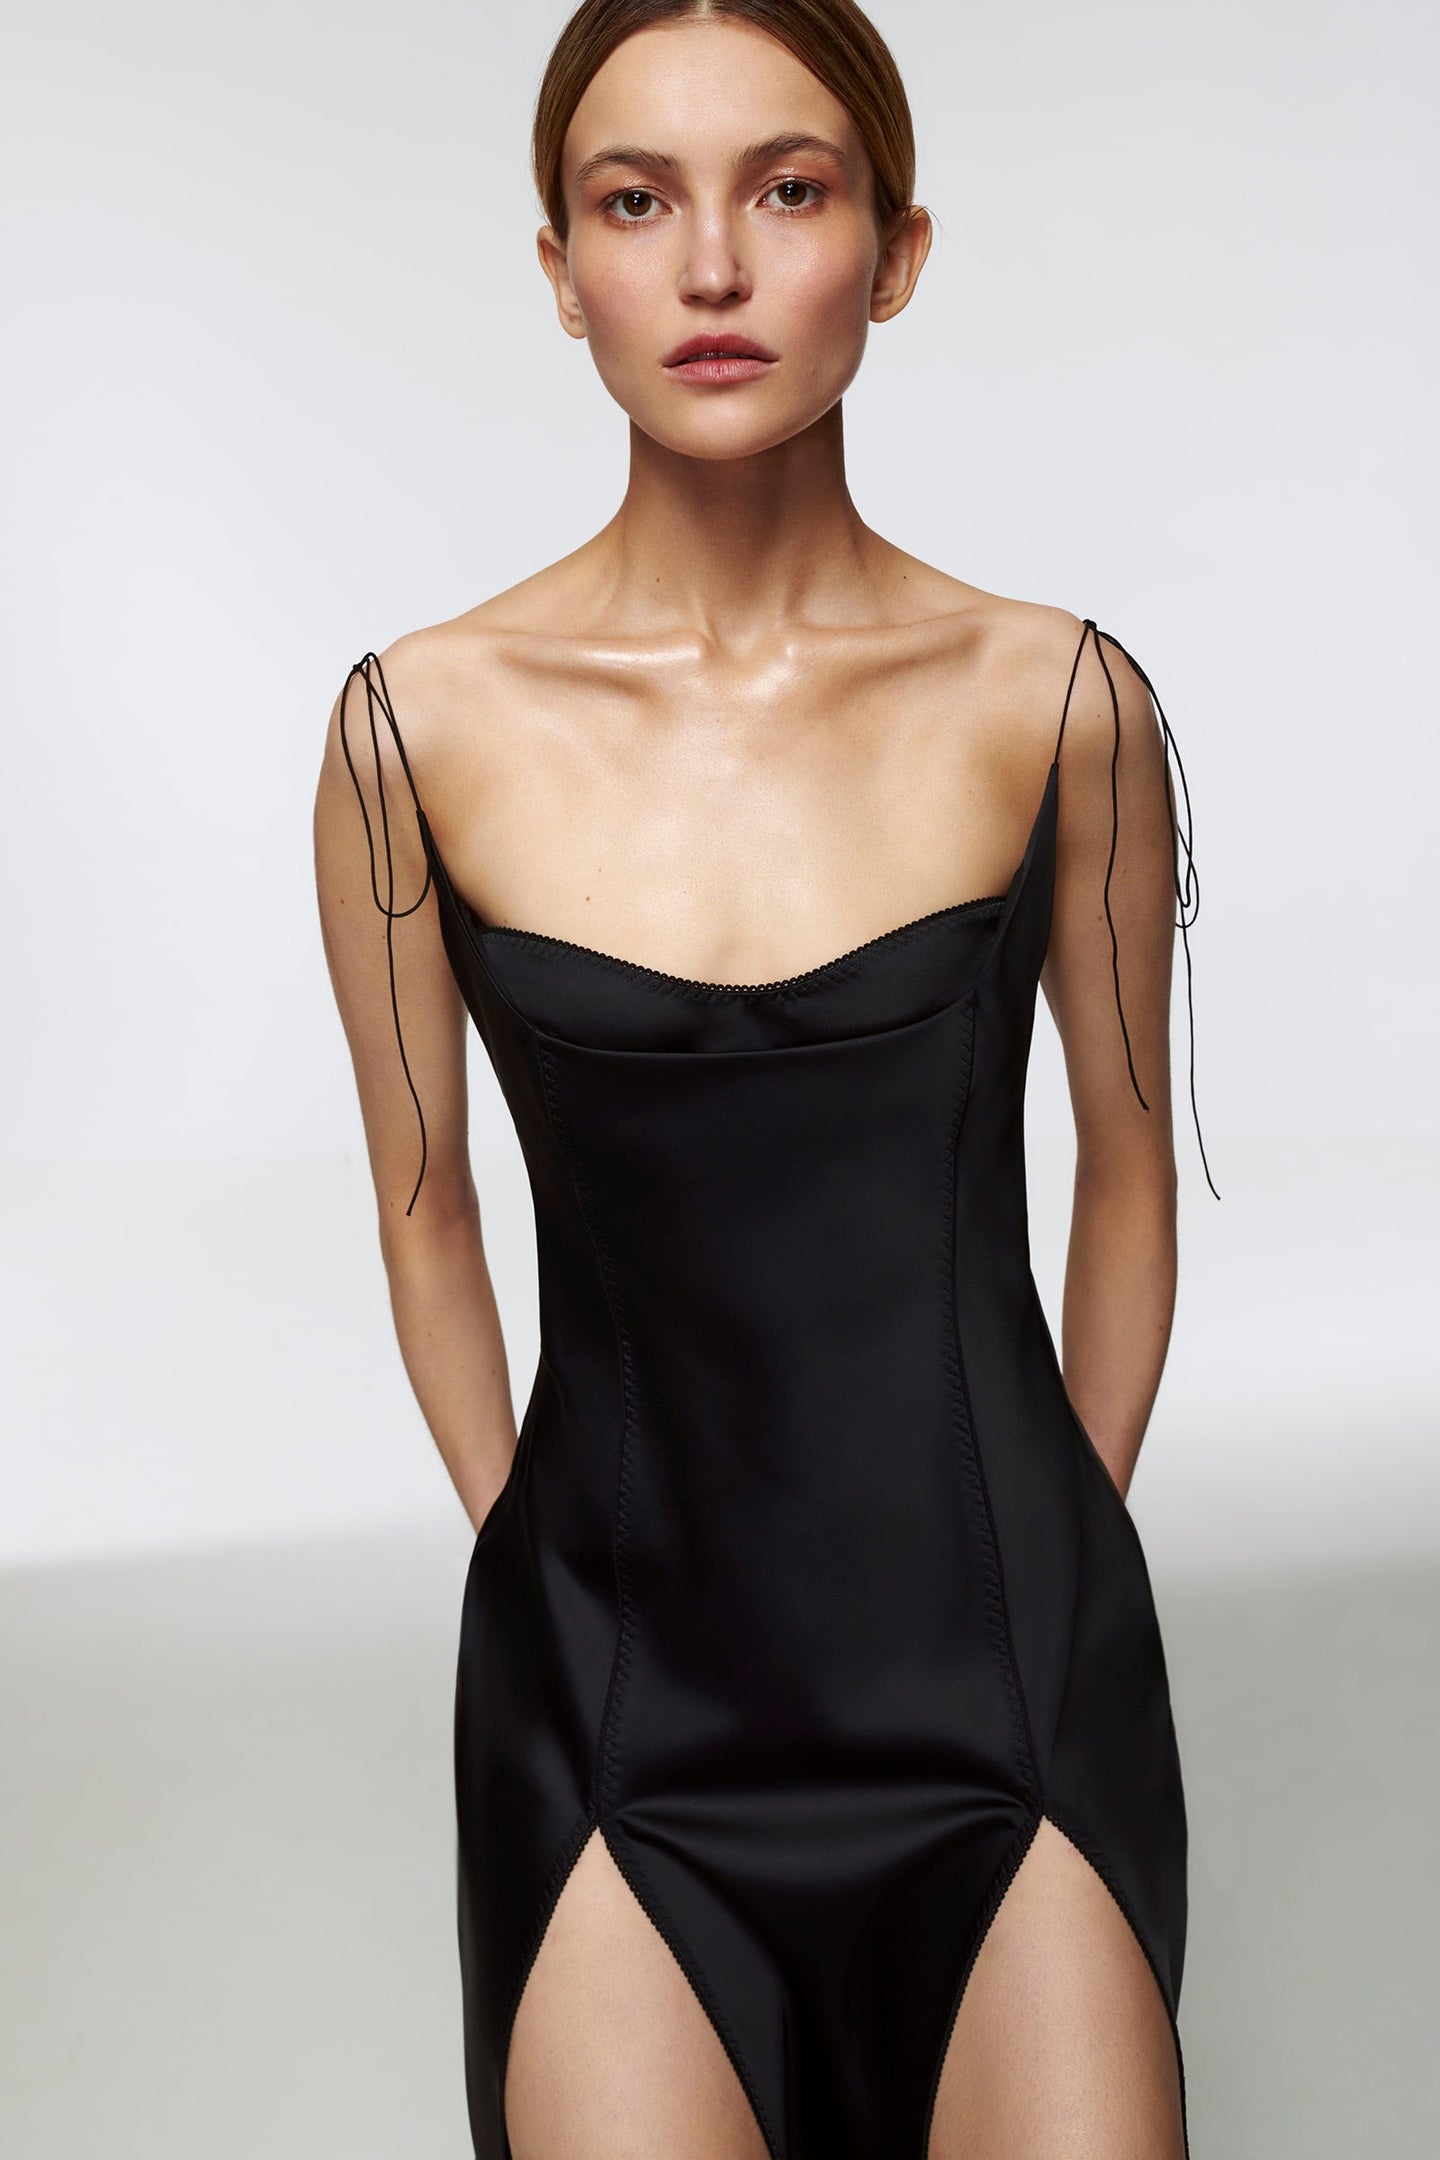 Model in black Dancer dress